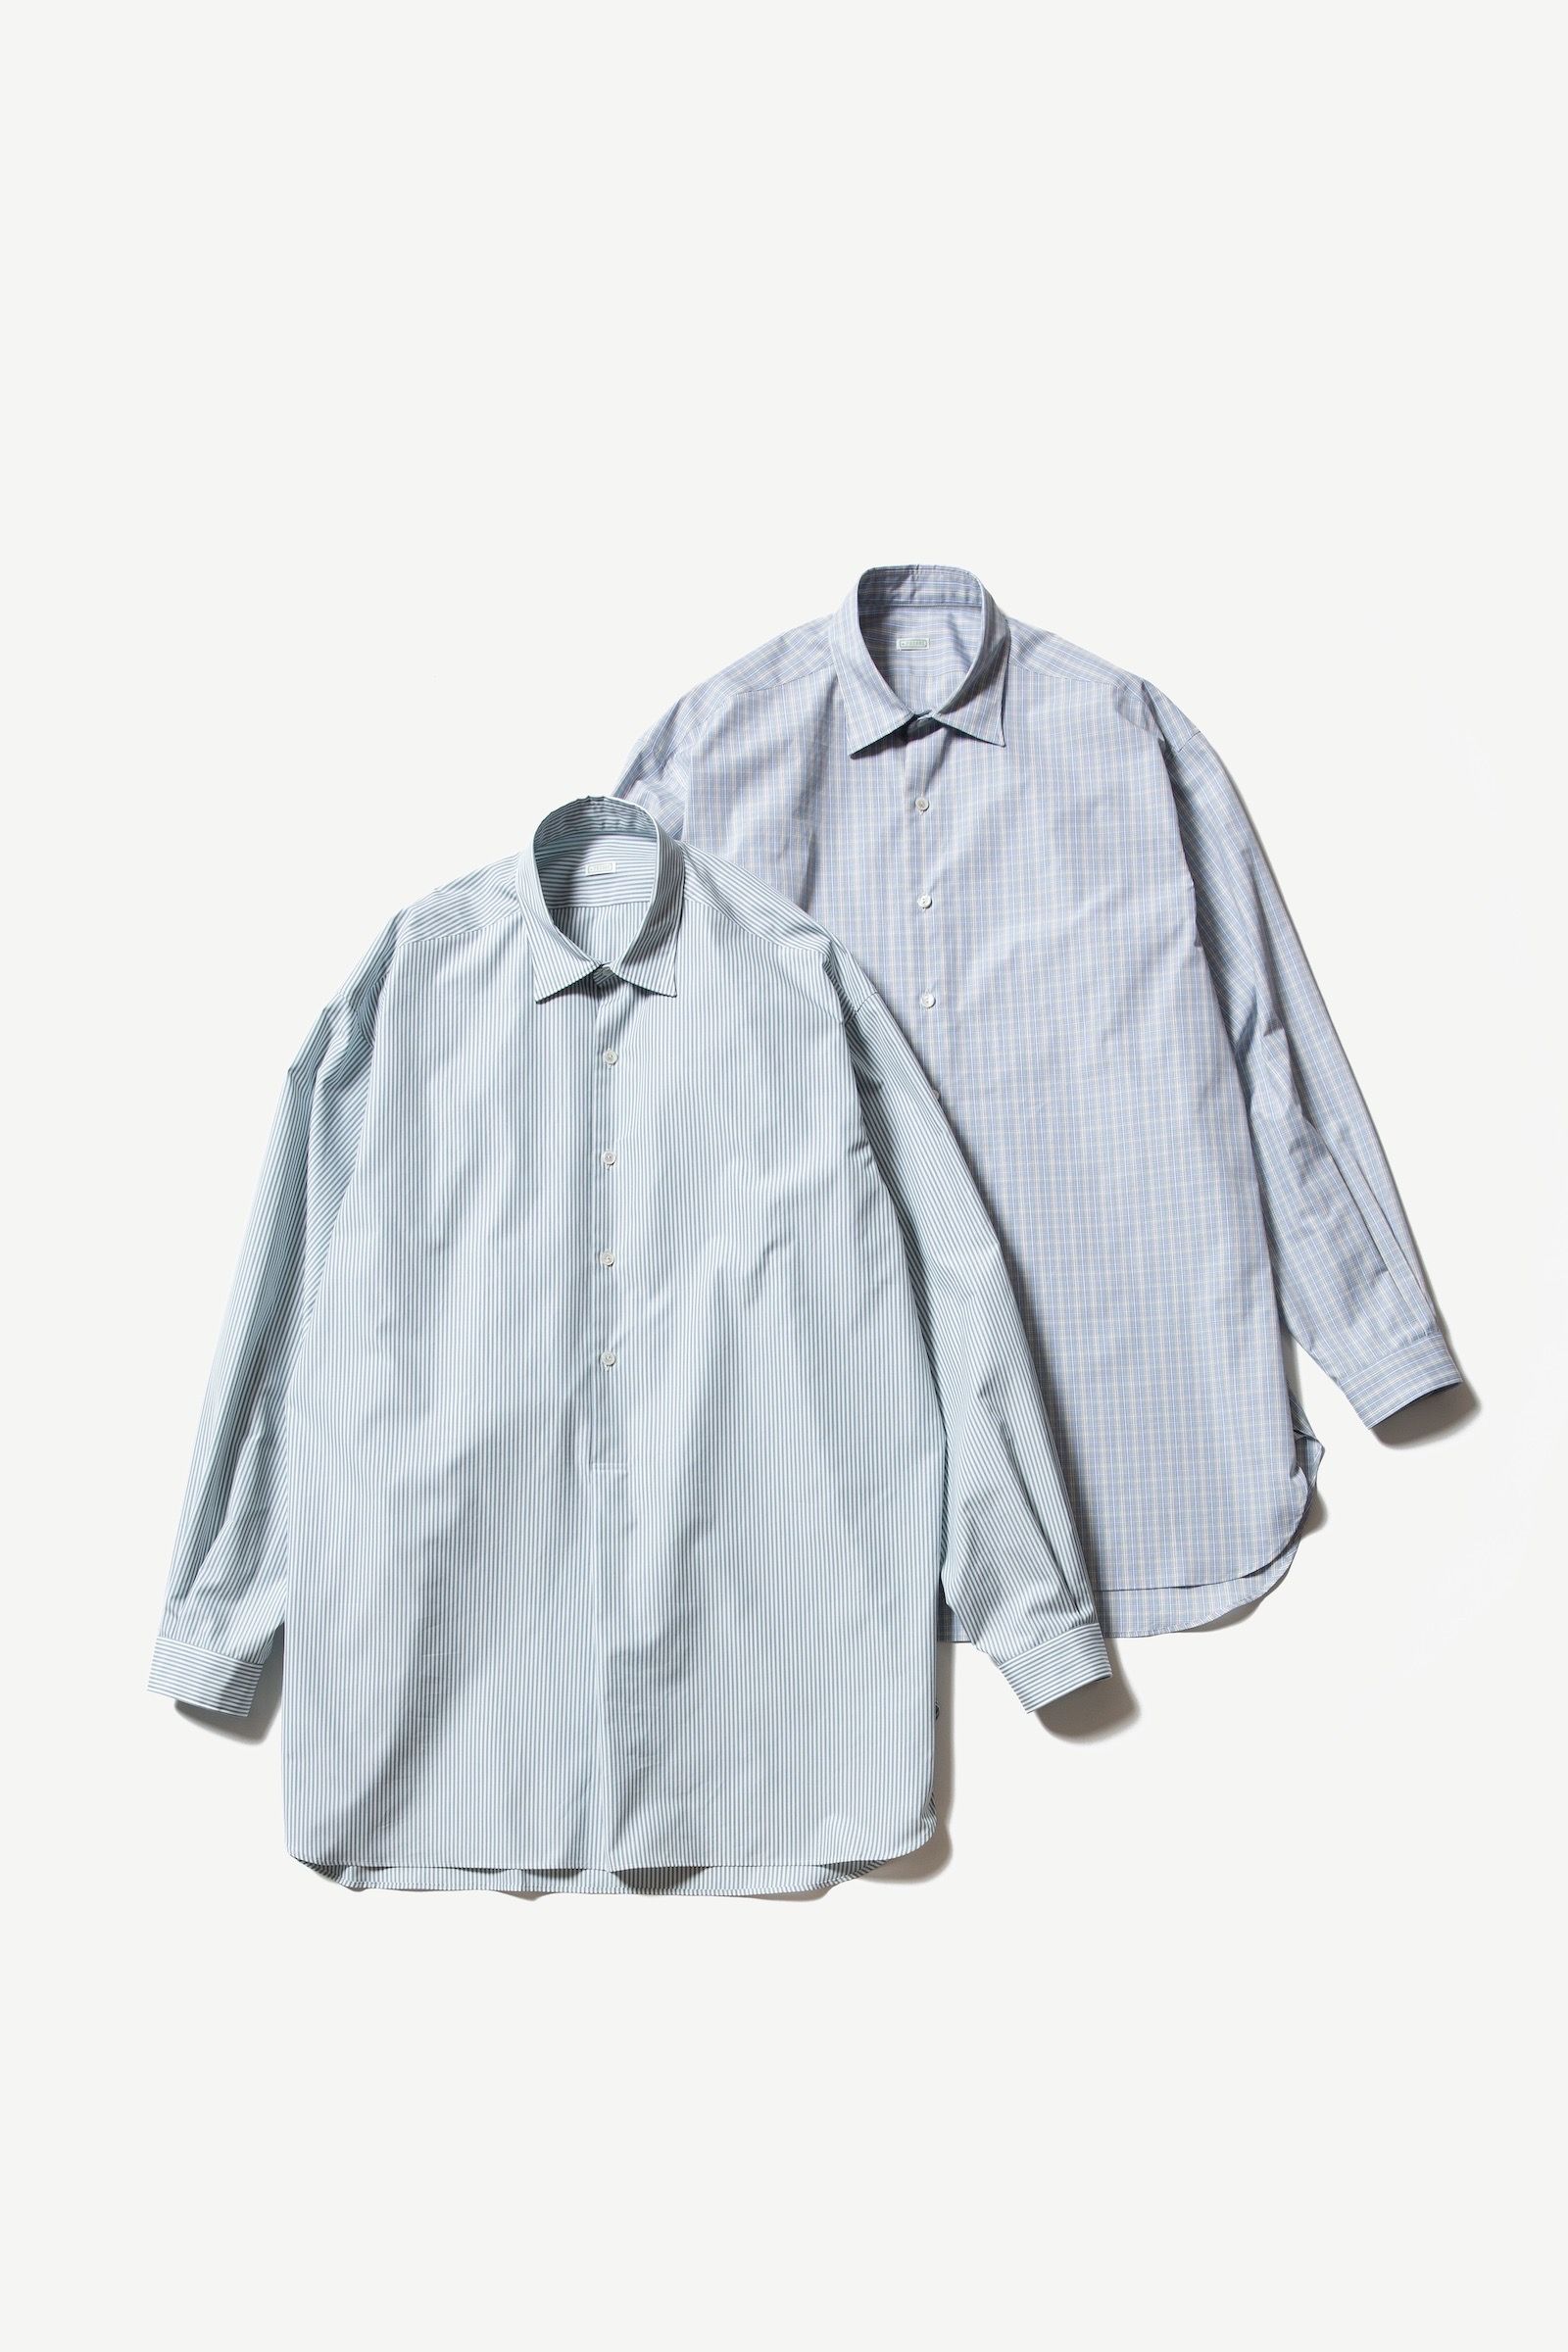 A.PRESSE Pullover Granpa Shirt ホワイト 新品 3